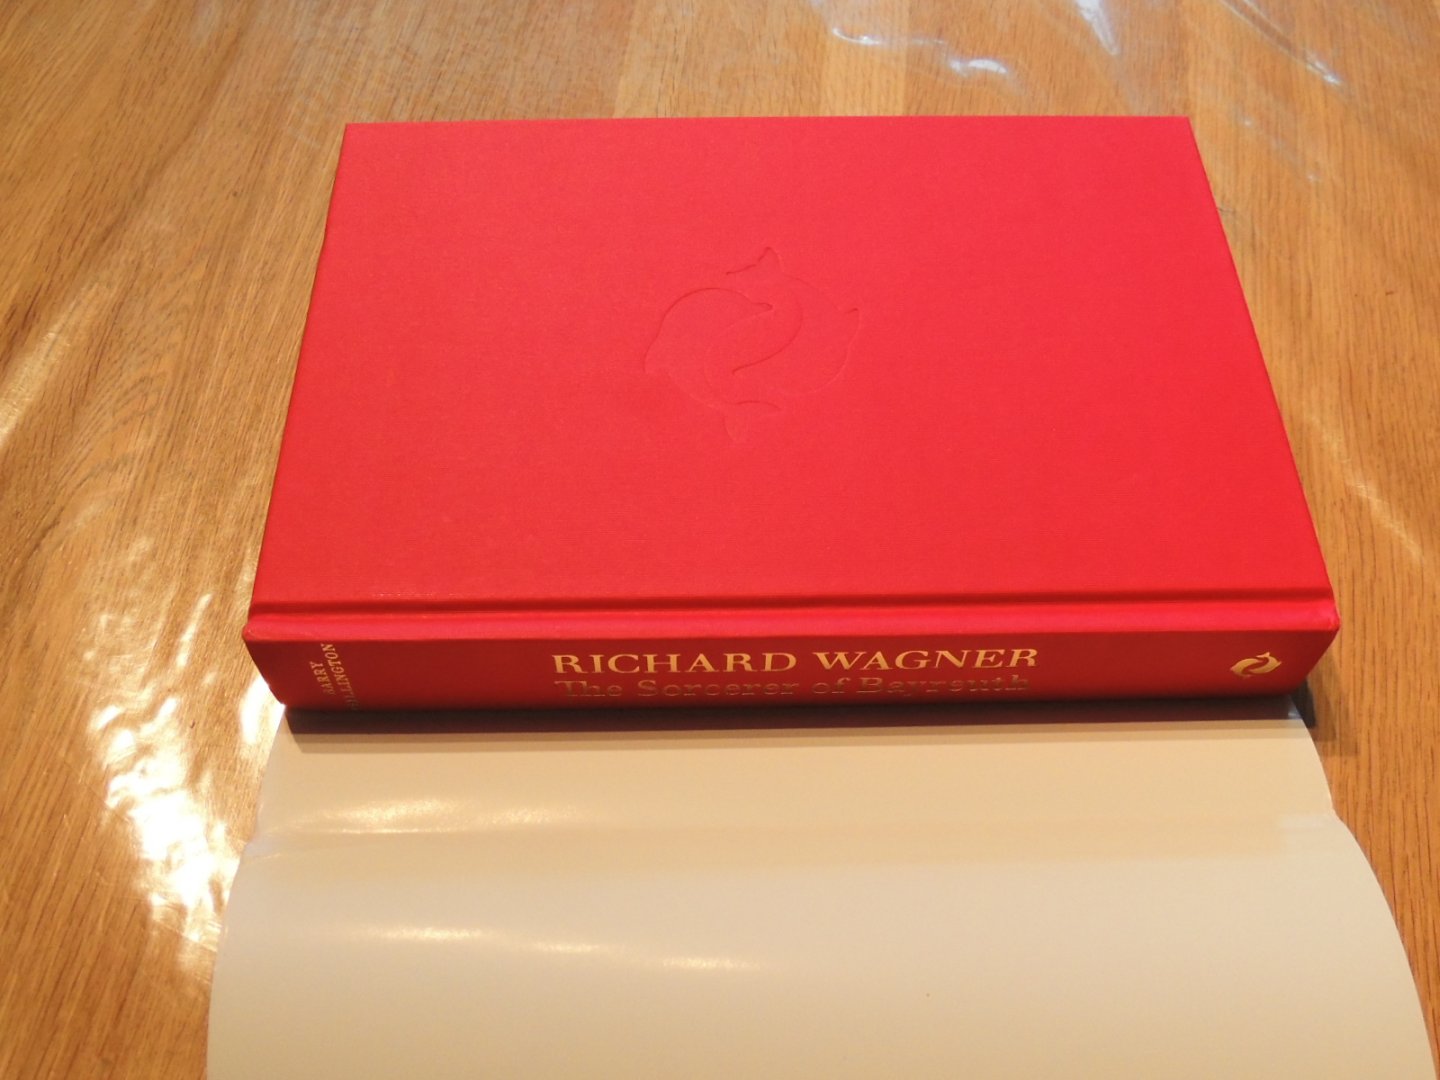 Millington, Barry - Richard Wagner, - The Sorcerer of Bayreuth - Richard Wagner